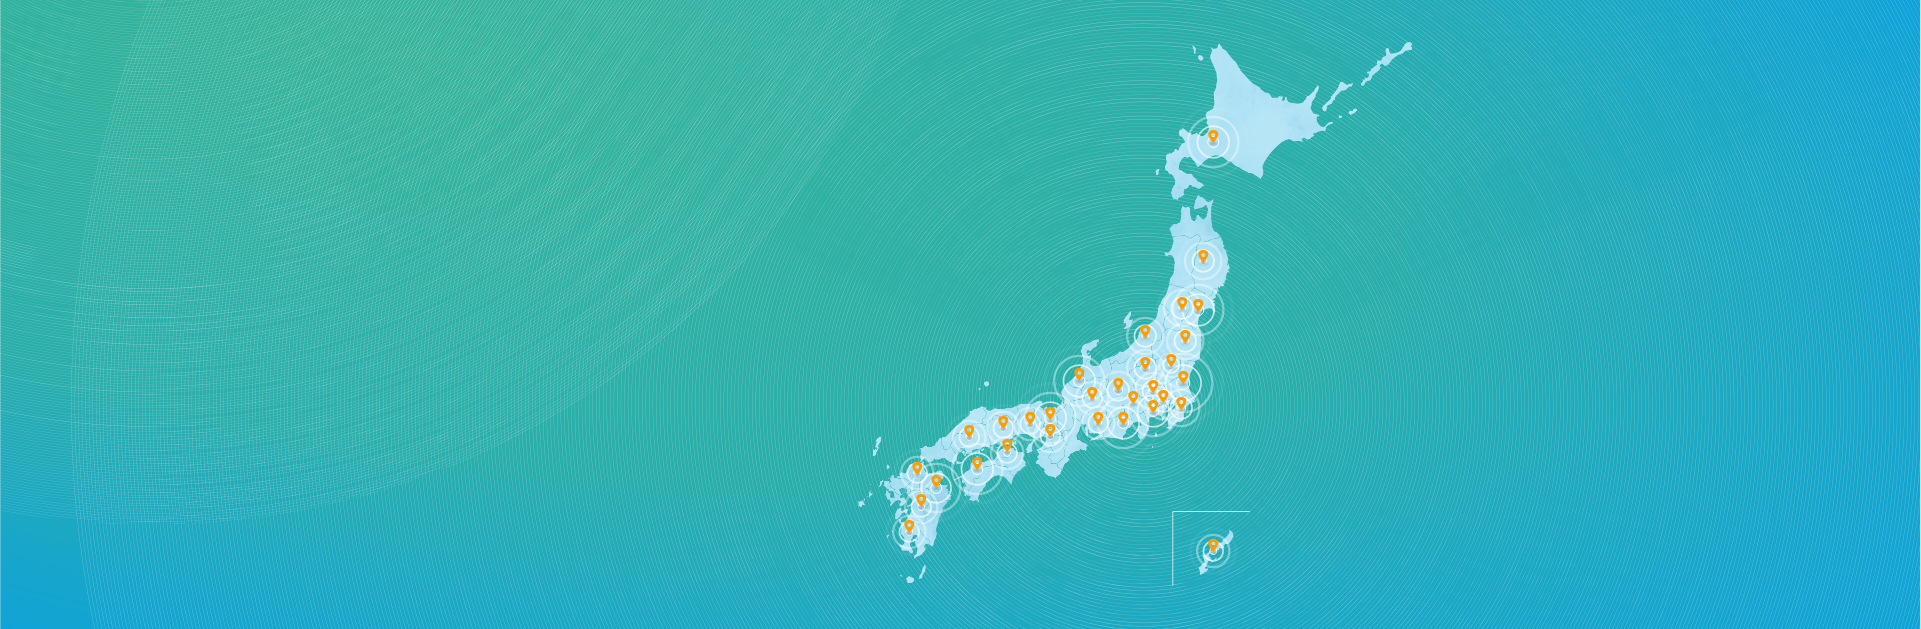 アットホームの不動産情報ネットワークが日本全土に広がるイメージ